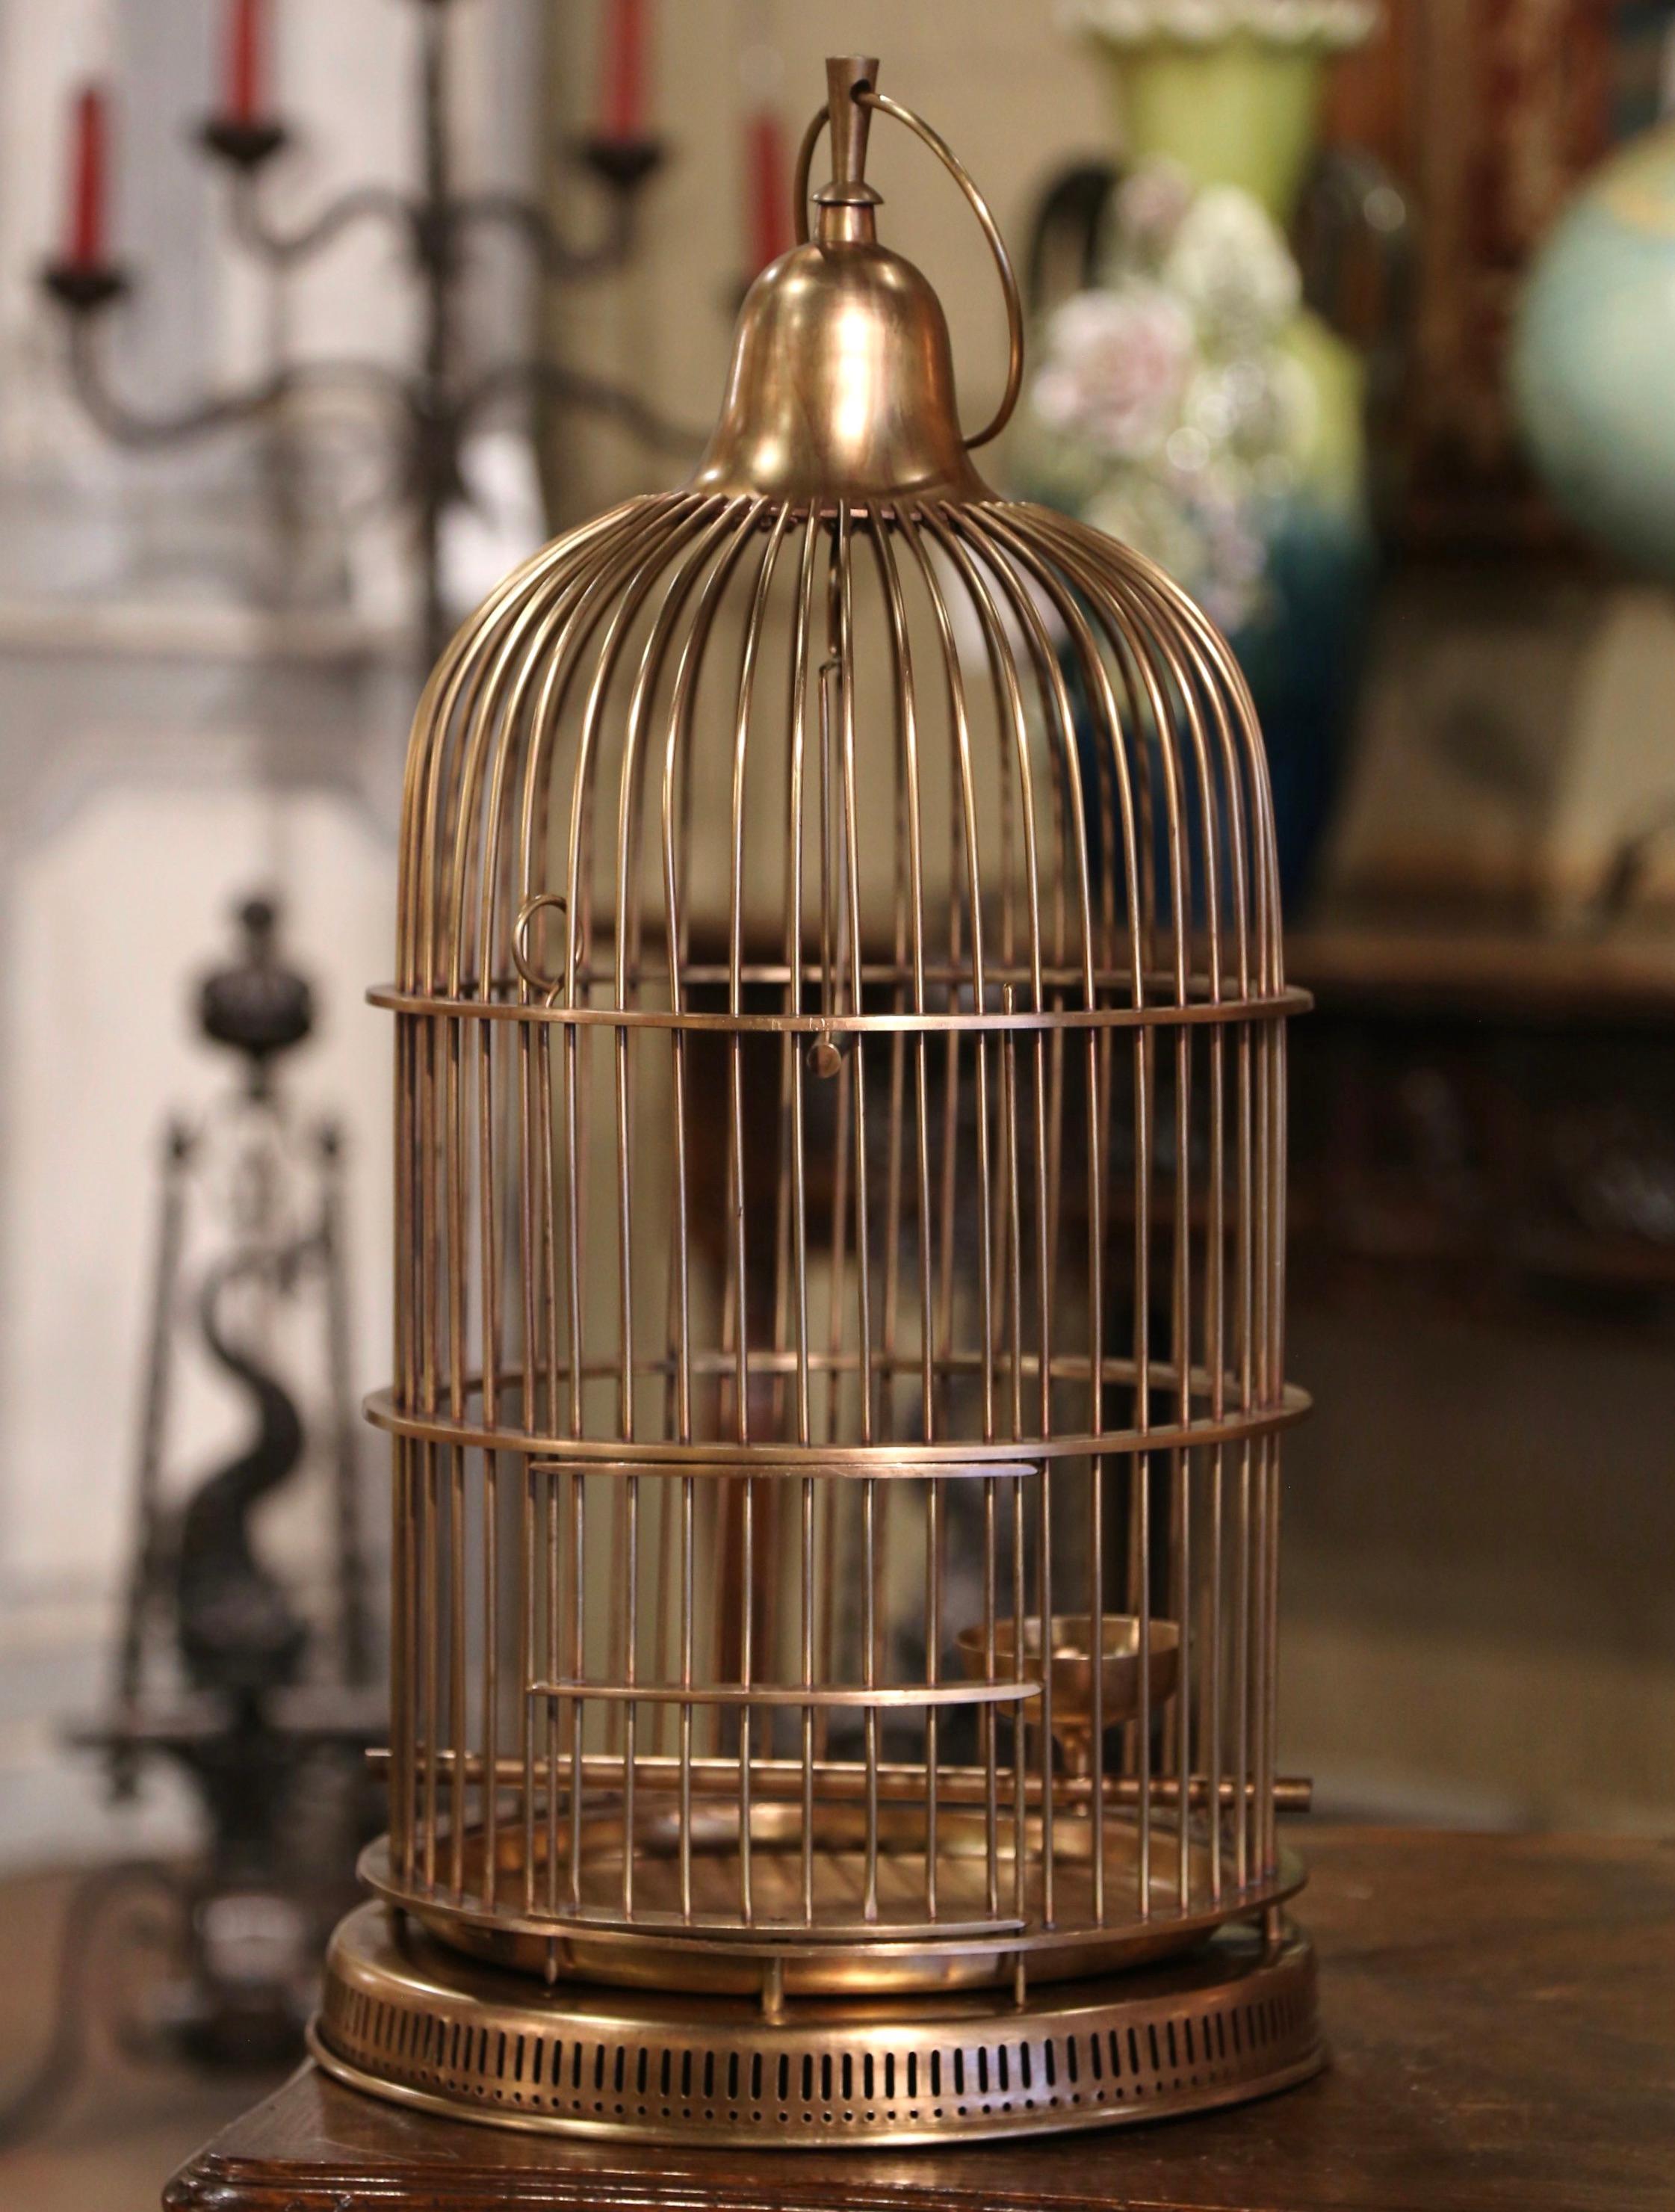 Décorez votre maison avec cette cage à oiseaux antique et fantaisiste. Fabriquée en France, vers 1920, cette cage en laiton, de forme cylindrique, est surmontée d'un dôme arrondi agrémenté d'un crochet de suspension décoratif. La cage dispose d'un